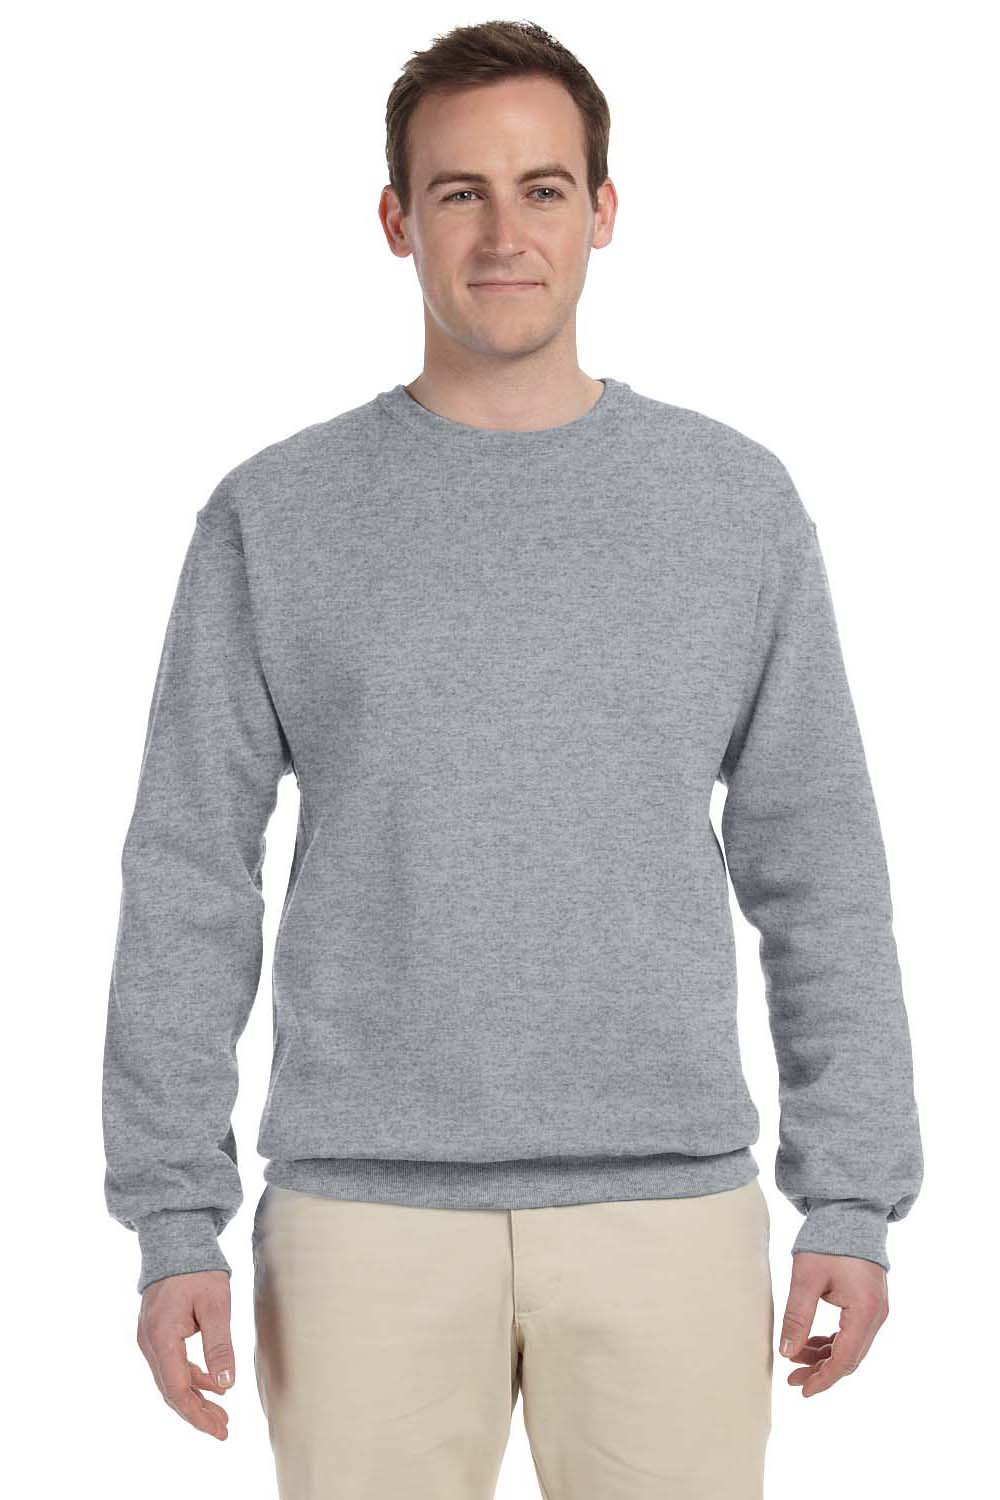 Jerzees 562 Mens NuBlend Fleece Crewneck Sweatshirt Oxford Grey Front